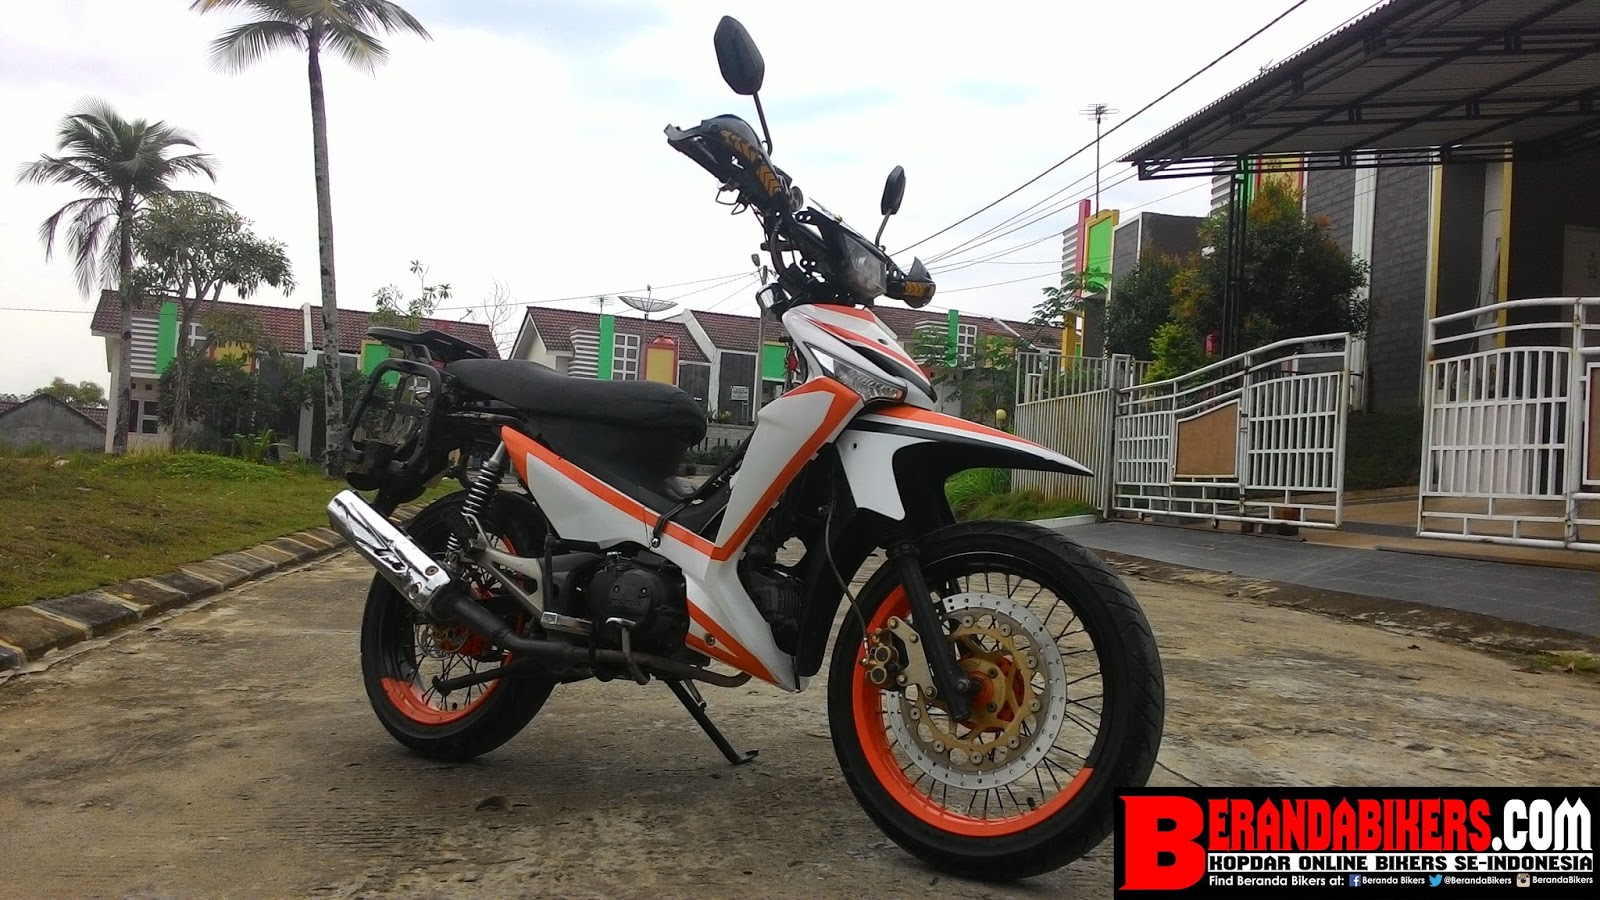 BerandaBikerscom Kopdar Online Bikers Indonesia Modifikasi Honda Supra X 125 Menjadi Supermoto